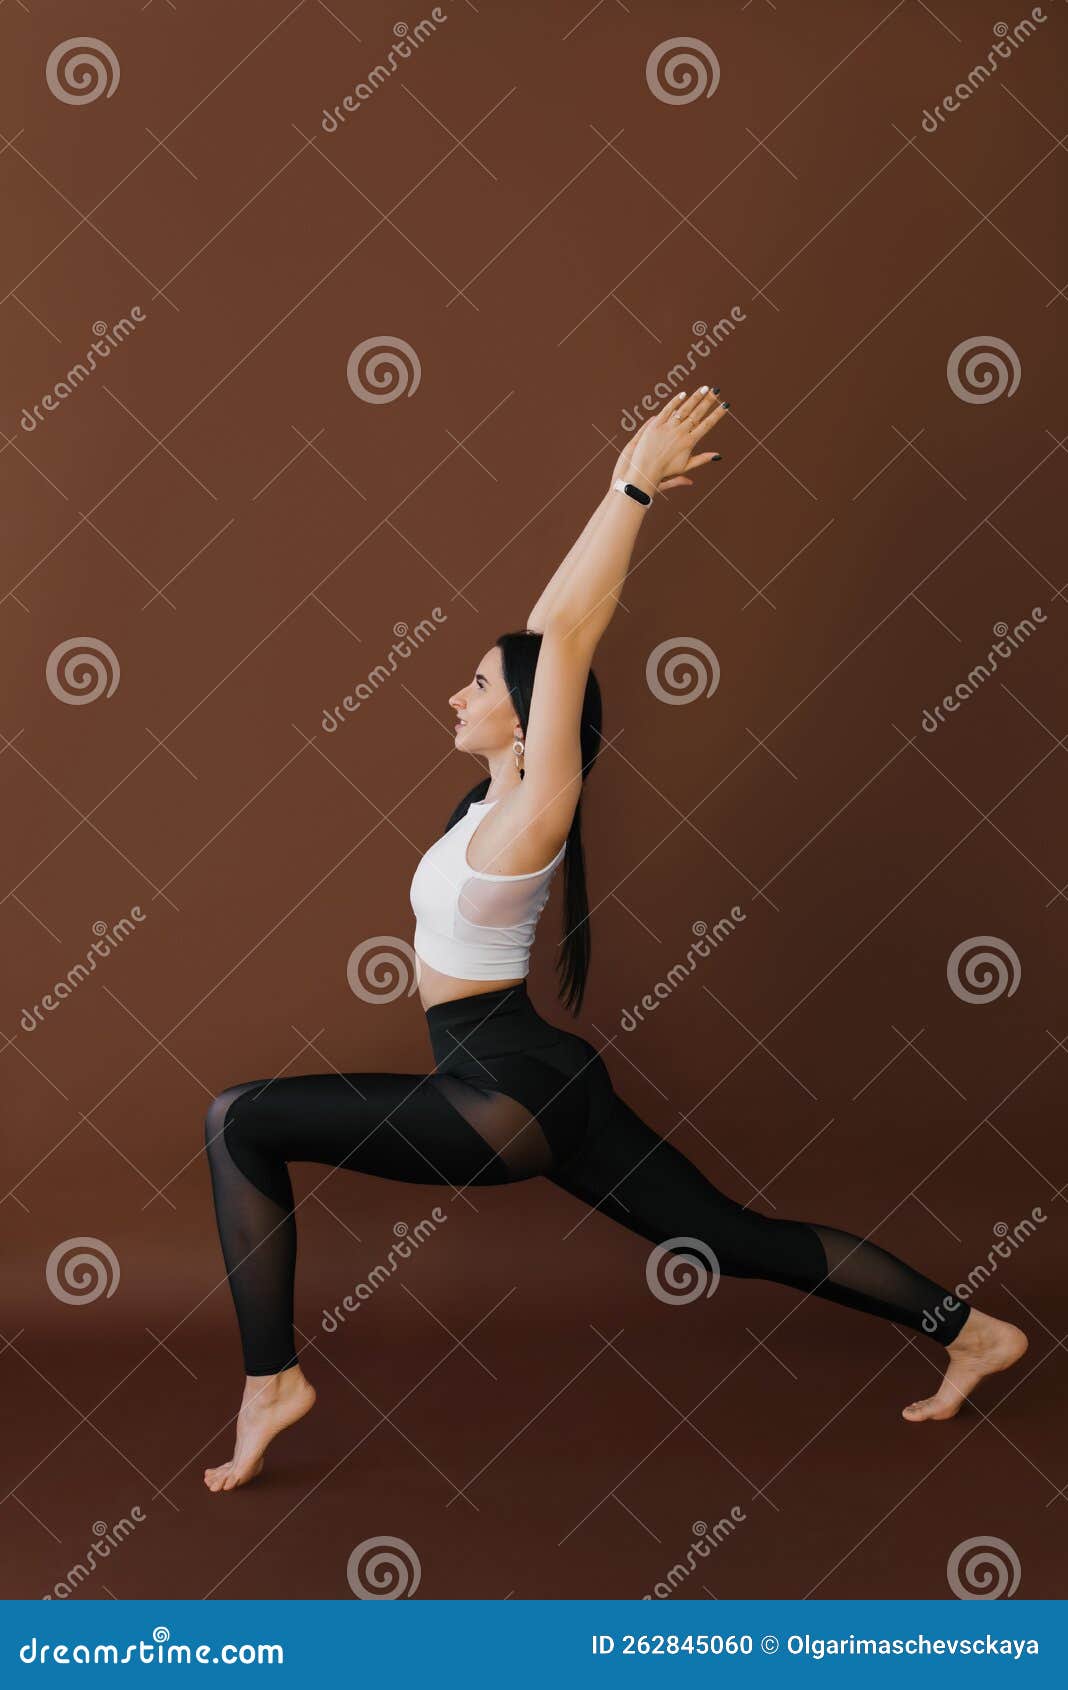 Parivrtta Anjaneyasana - Revolved Lunge Pose - Yogic Way of Life | Yoga  poses, Yoga poses advanced, Power yoga poses